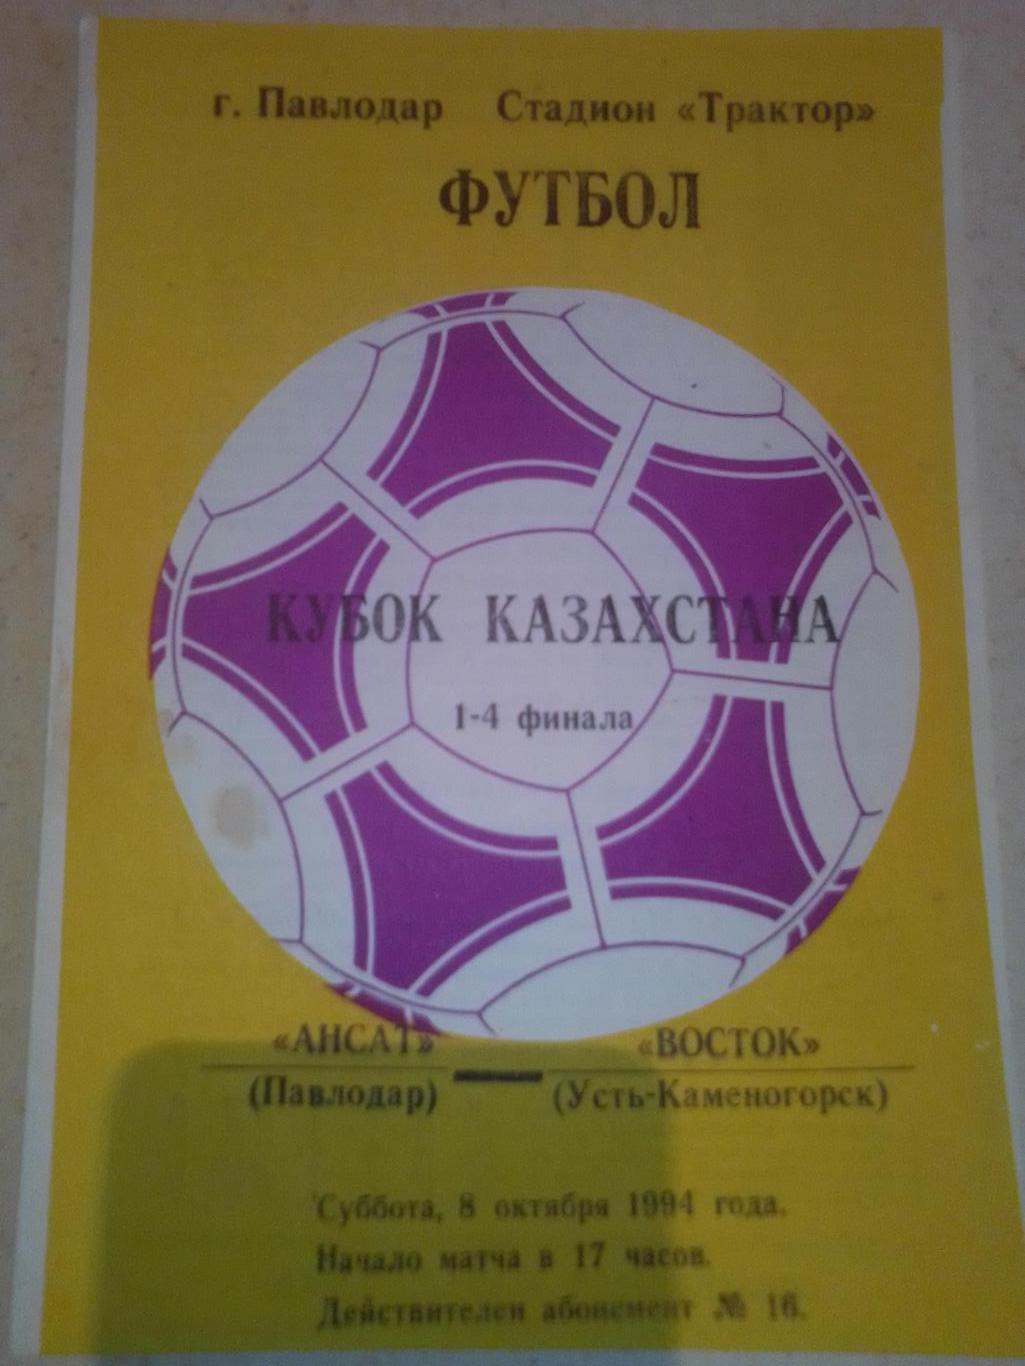 Кубок Казахстана: Ансат Павлодар-Восток Усть-Каменогорск 1994 год.